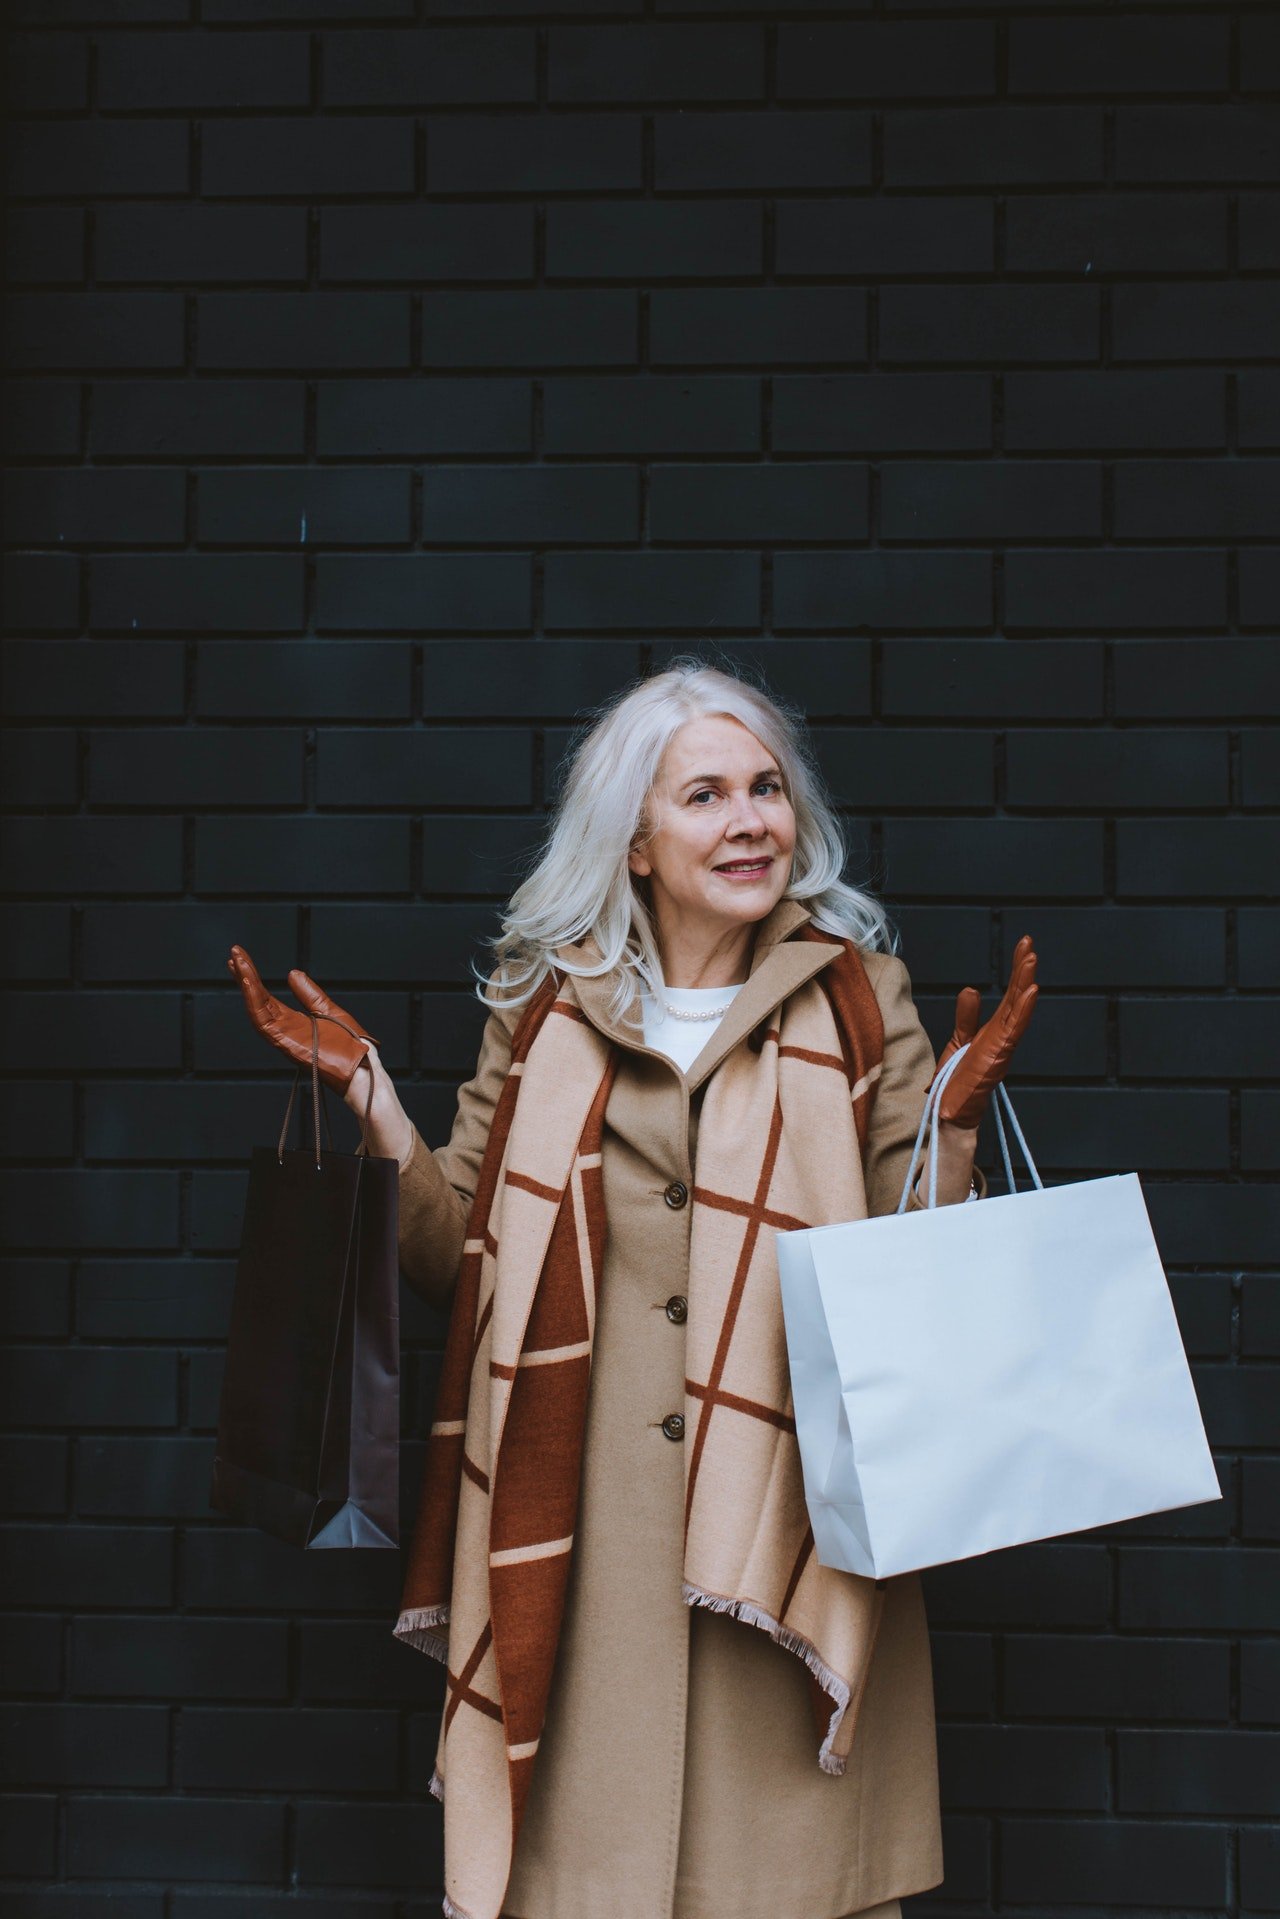 Ältere Frau mit Einkaufstüten | Quelle: Pexels